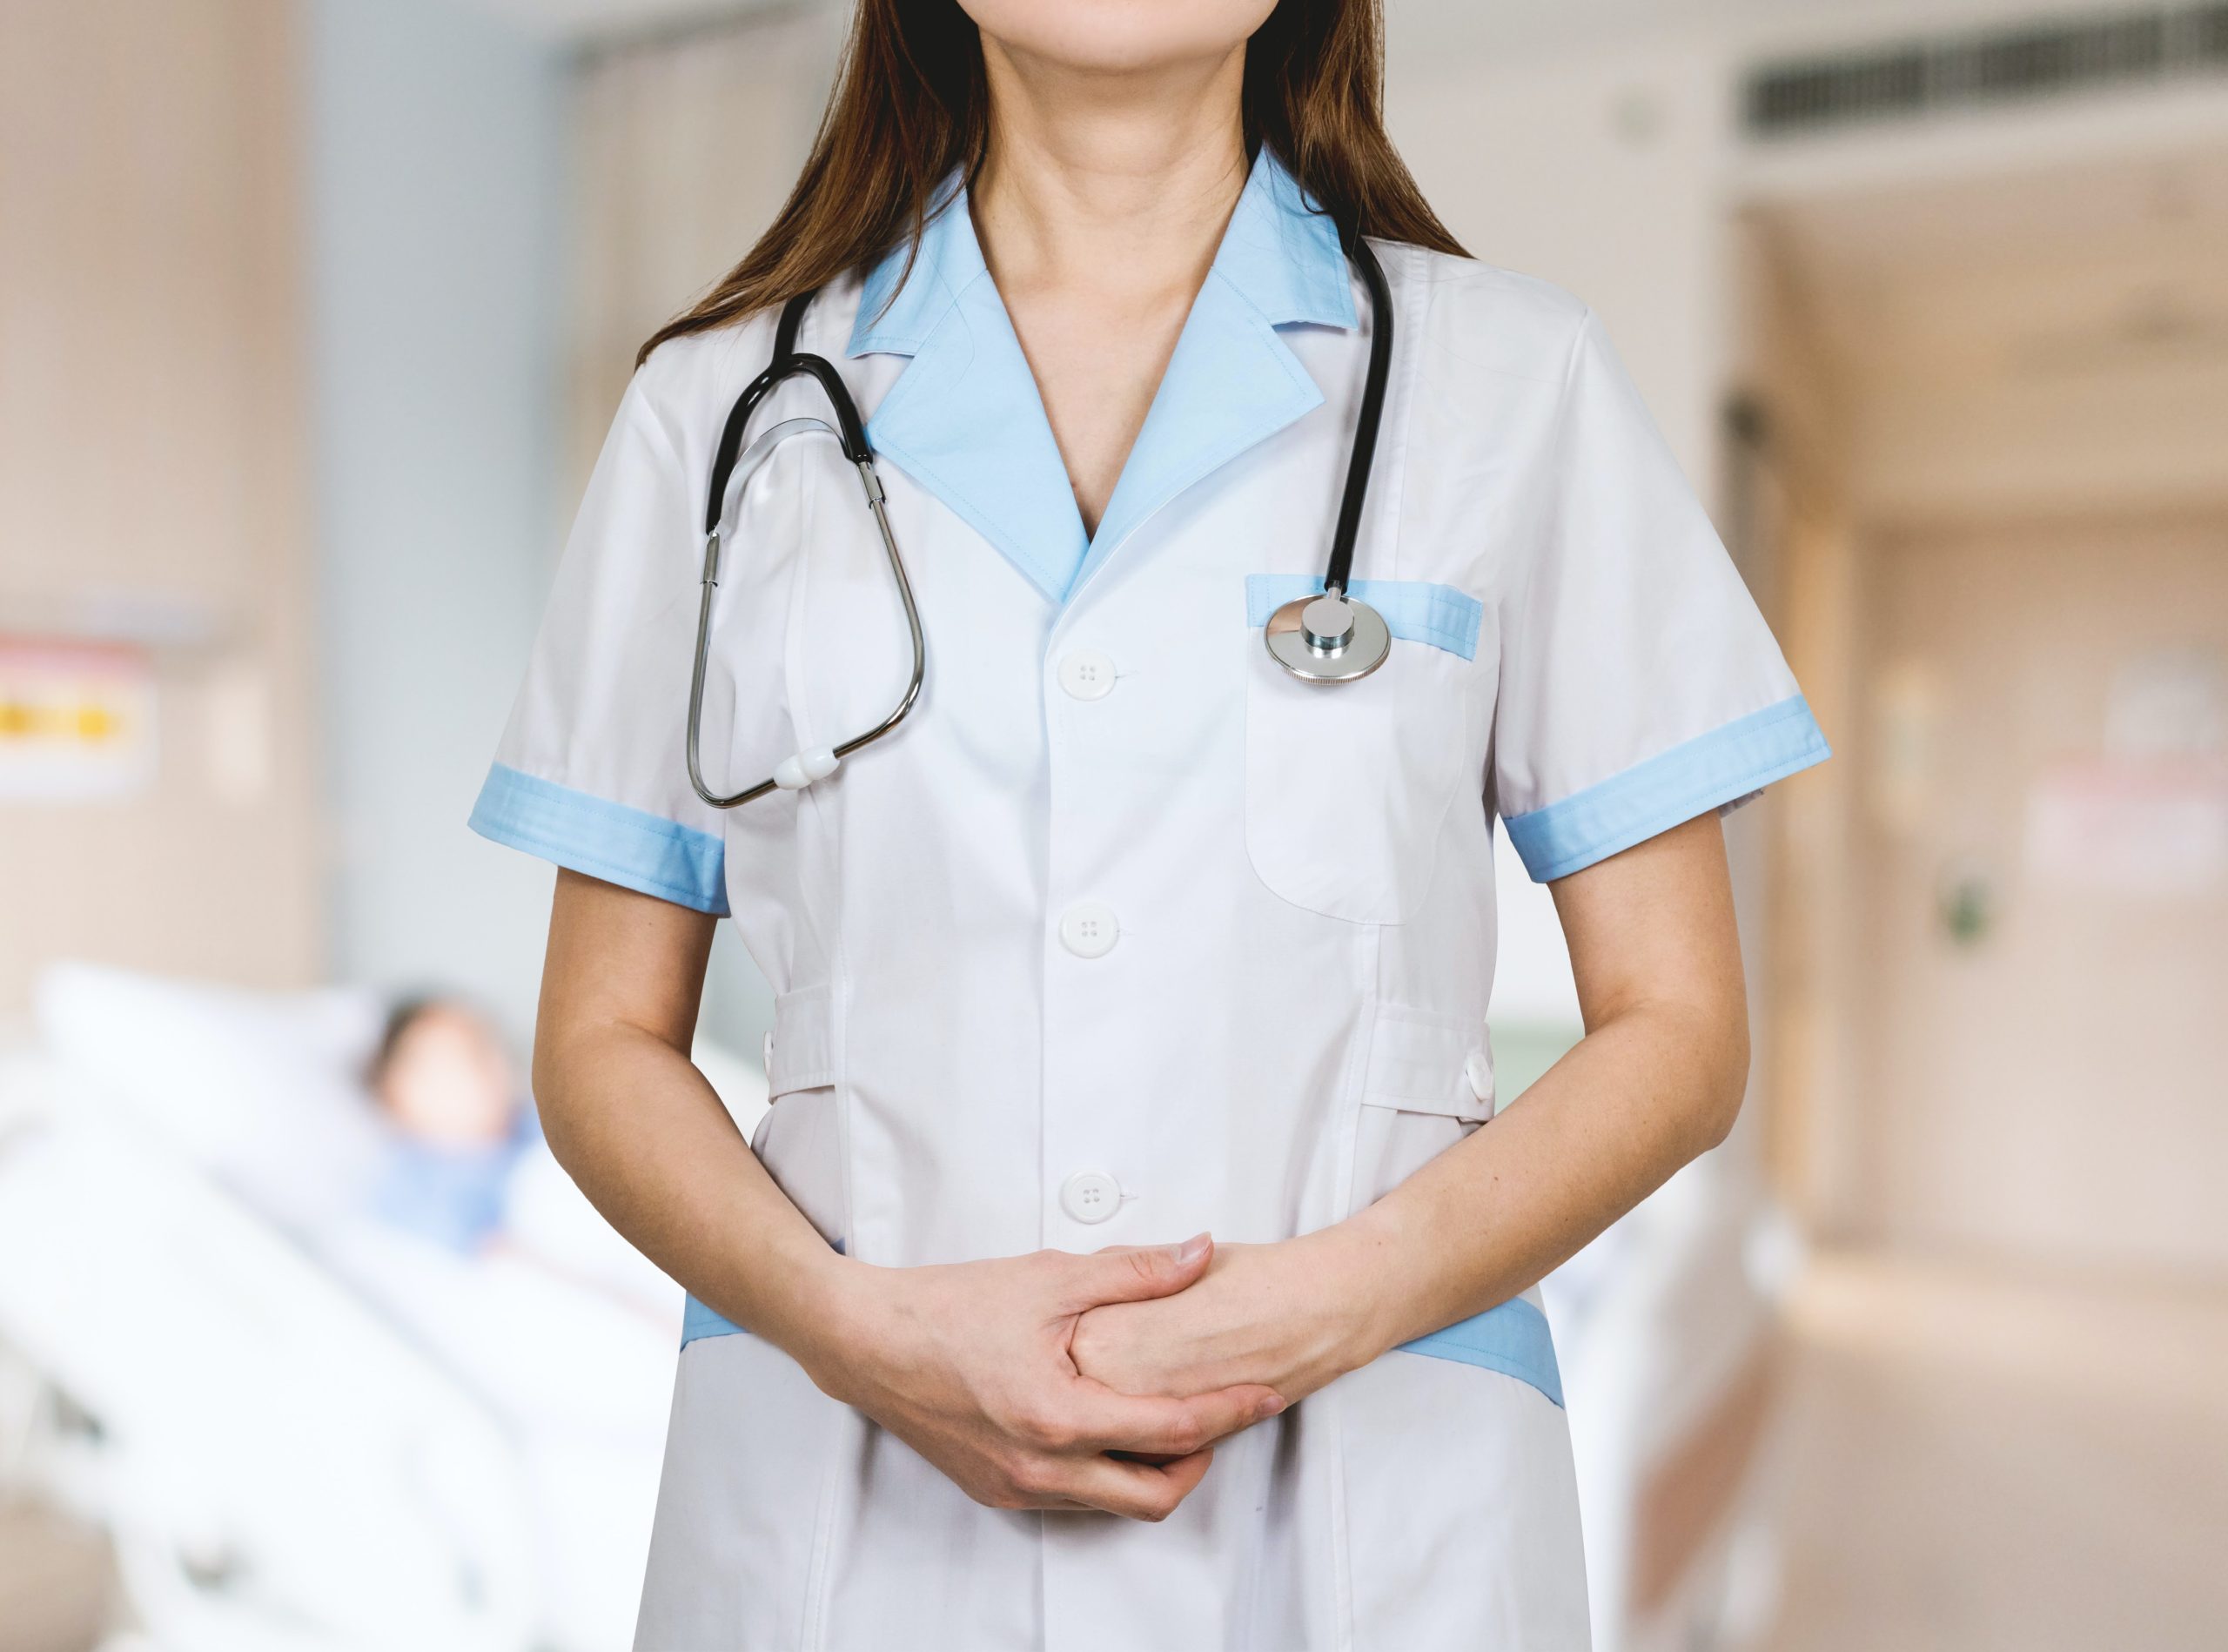 Infirmière enceinte : quels risques professionnels ? - Actusoins -  infirmière, infirmier libéral actualités de la profession infirmière